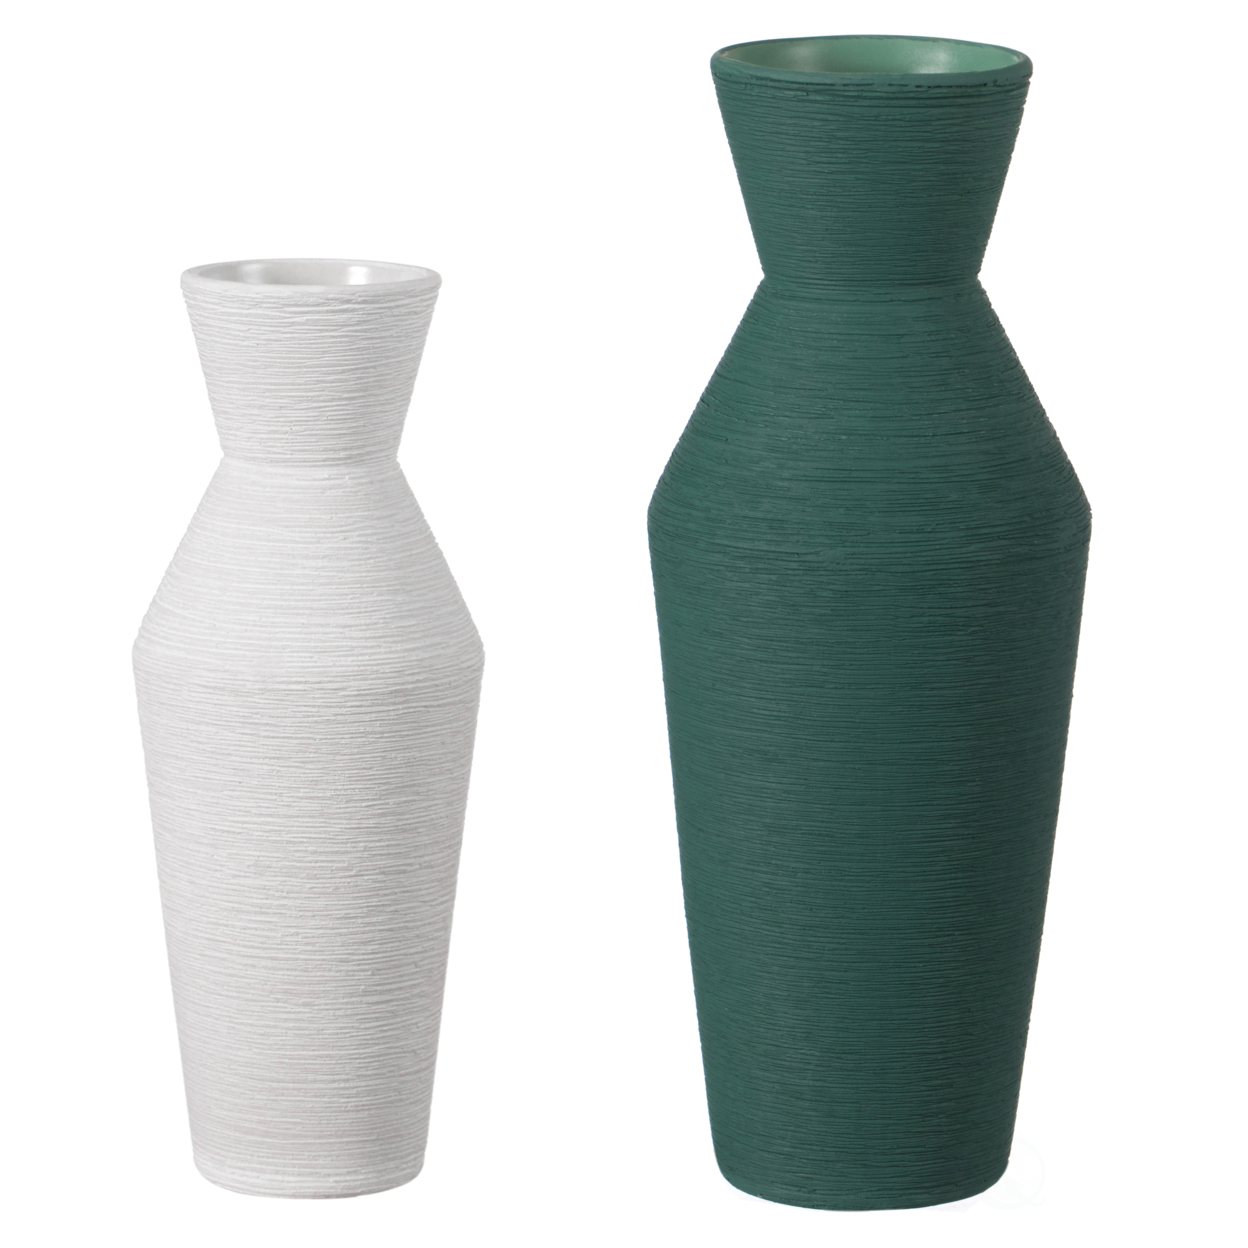 Decorative Ceramic Round Sharp Concaved Top Vase Centerpiece Table Vase - Multi